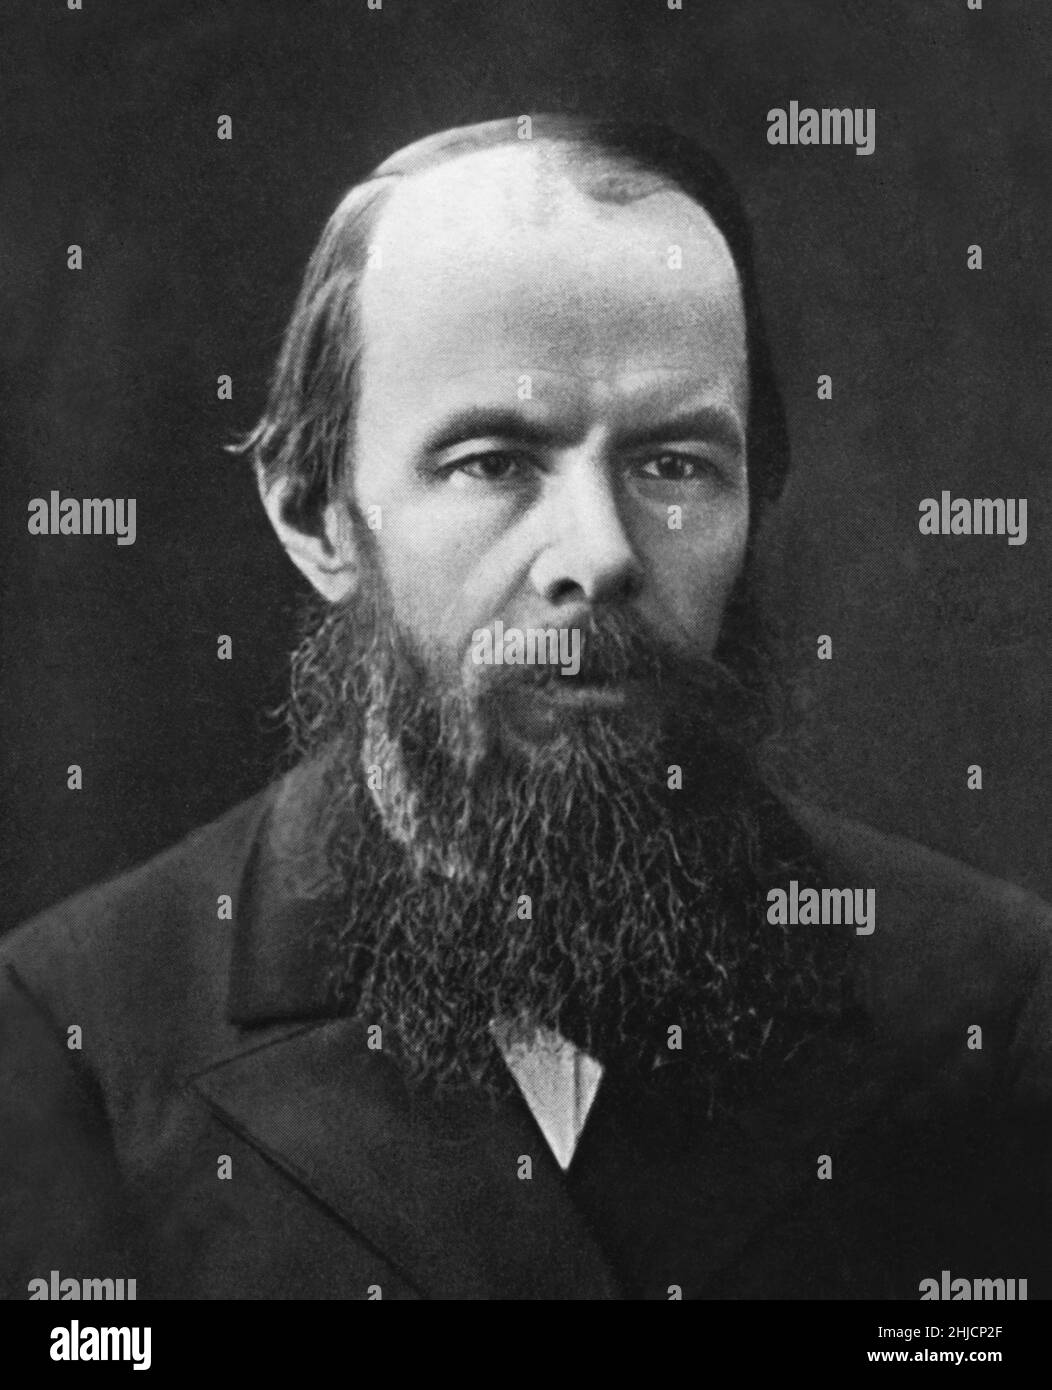 Fjodor Michailowitsch Dostojewski (11. November 1821 - 9. Februar. 1881) war ein russischer Schriftsteller, Philosoph, Kurzgeschichtenschreiber, Essayist und Journalist. Stockfoto